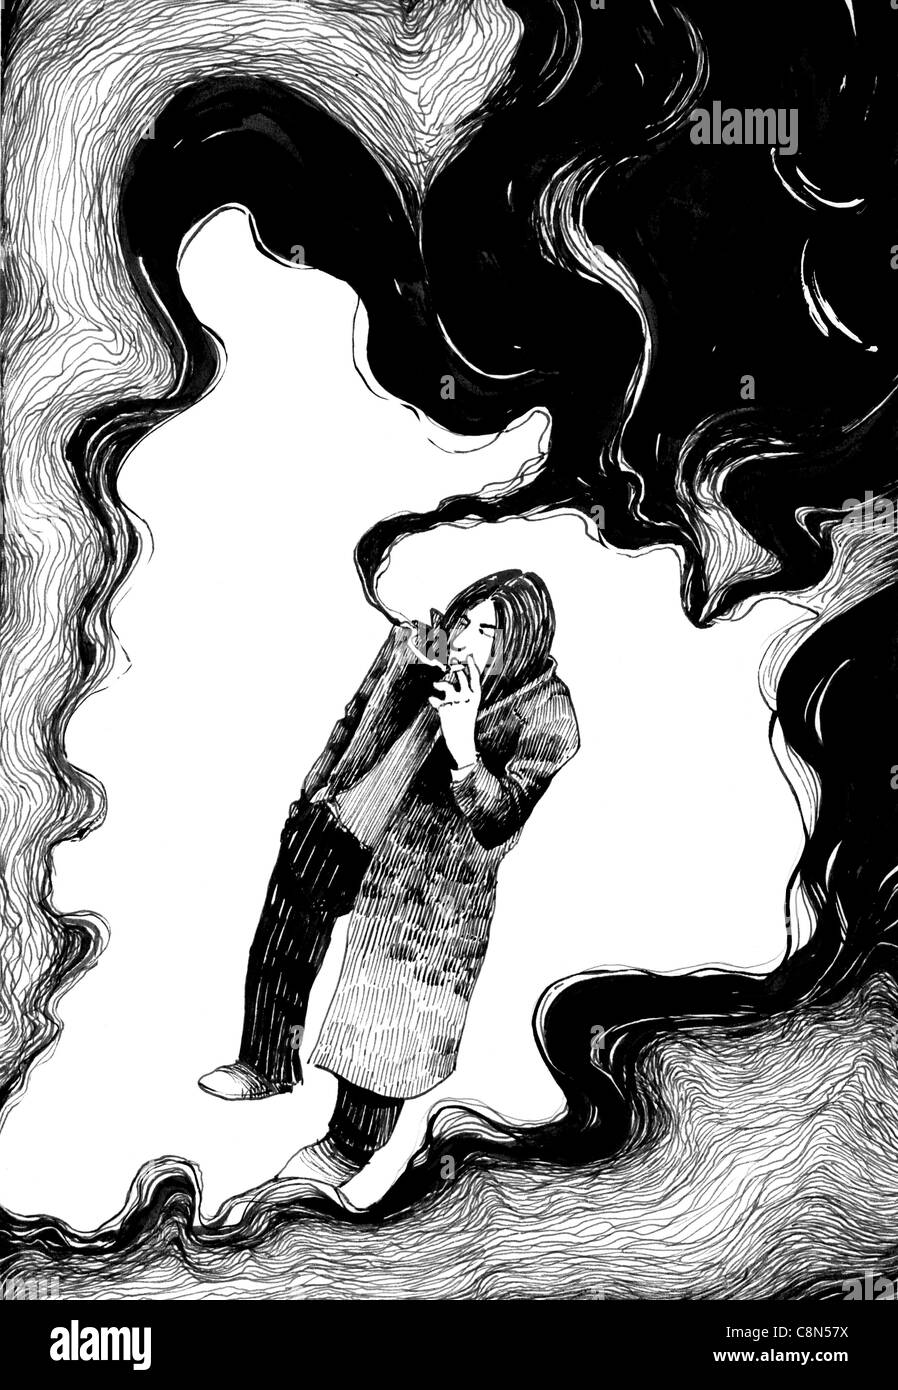 Illustration dessin de man smoking a cigarette dans les nuages de fumée Banque D'Images